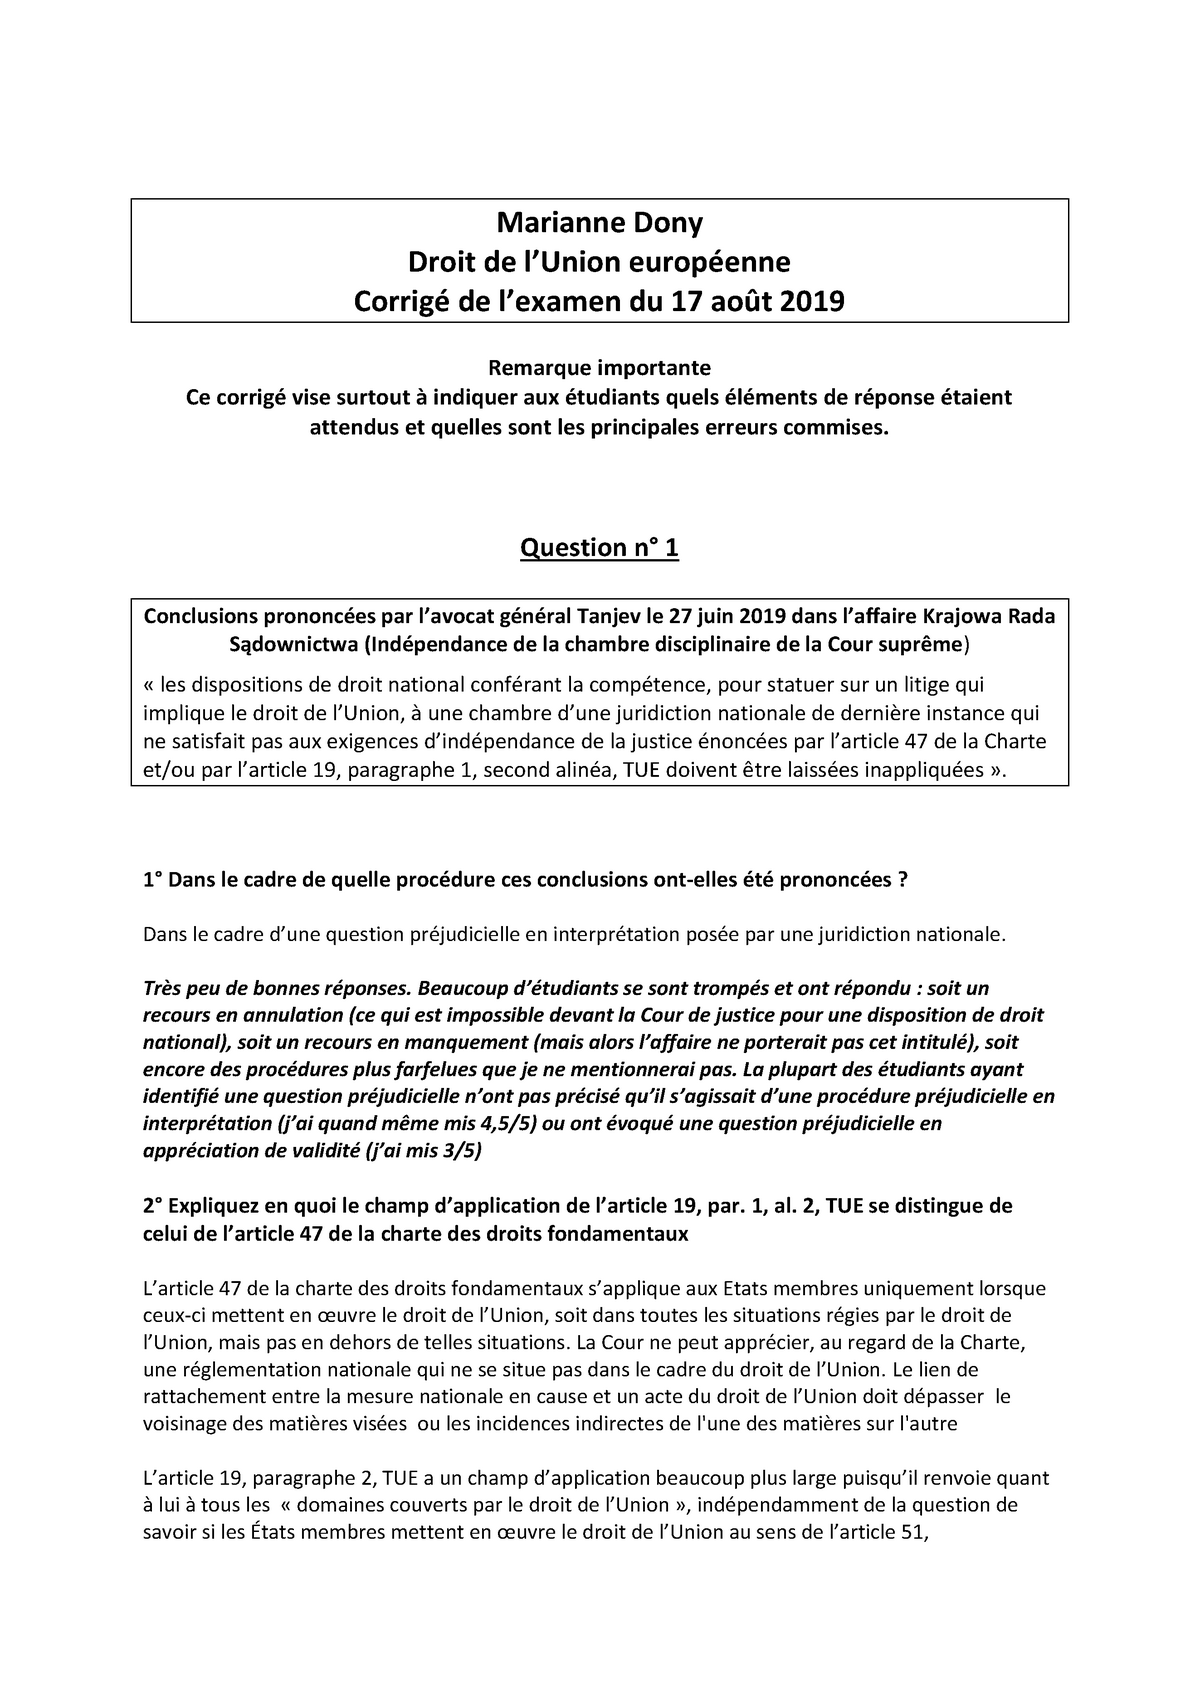 Examen 17 Août 2019, questions et réponses - Marianne Dony Droit de l ...